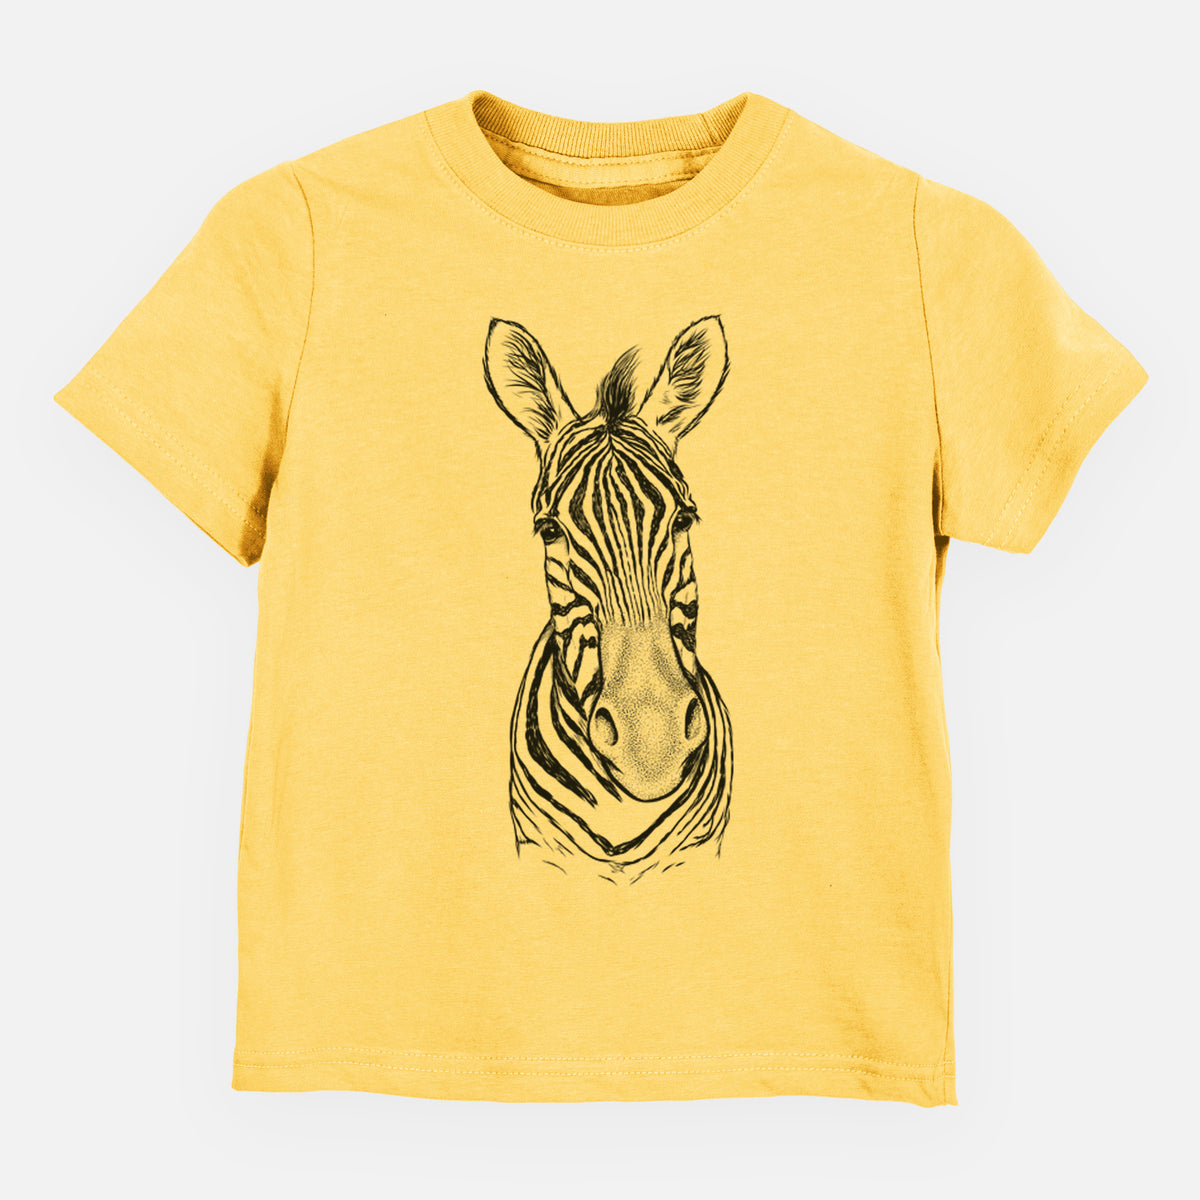 Damara Zebra - Equus quagga antiquorum - Kids Shirt